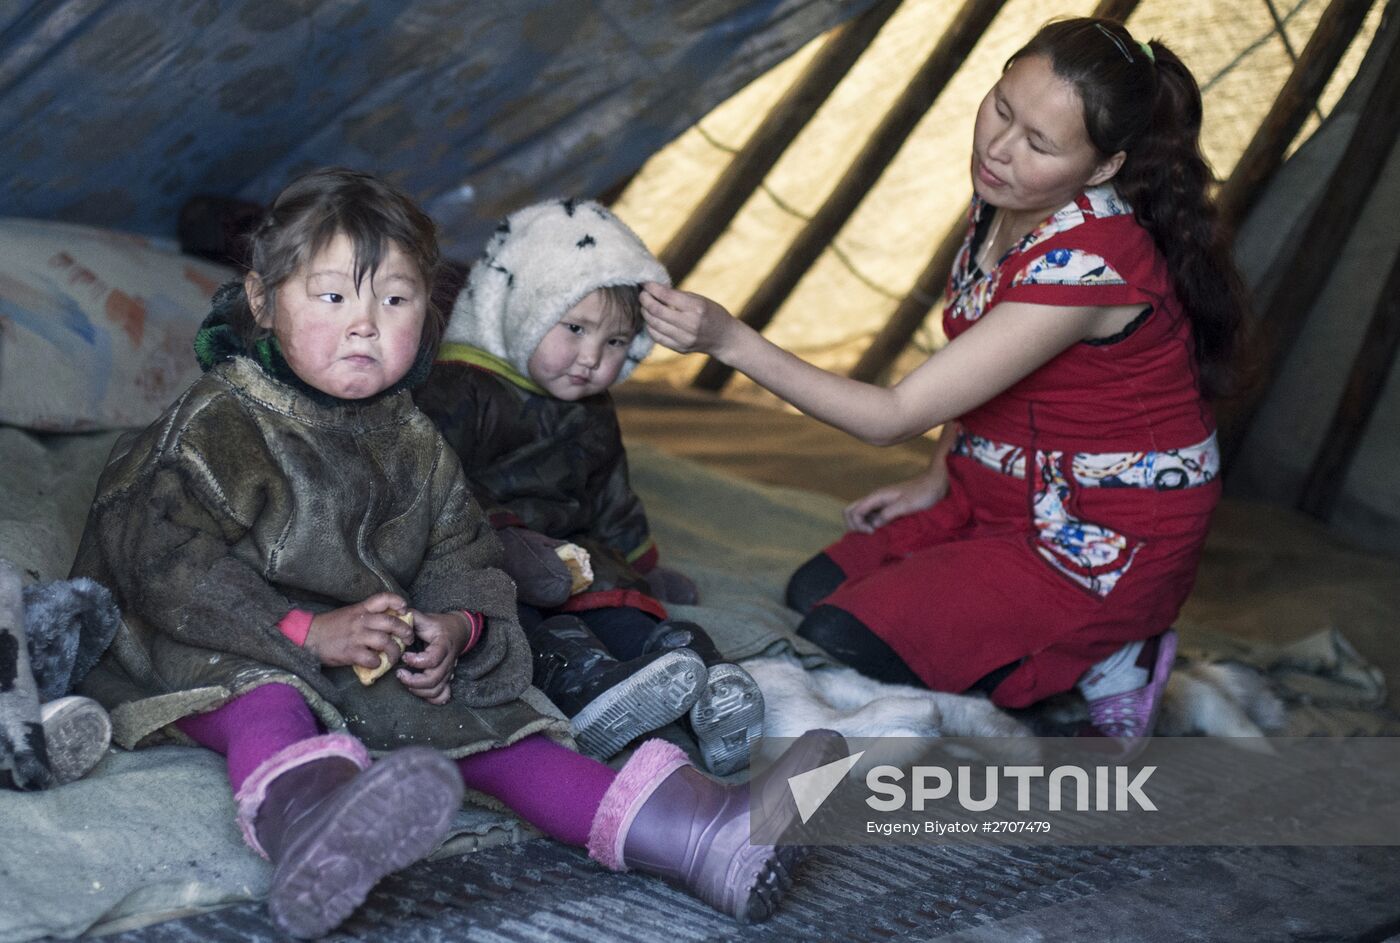 Dyanki-Koi ethnic community nomads camp